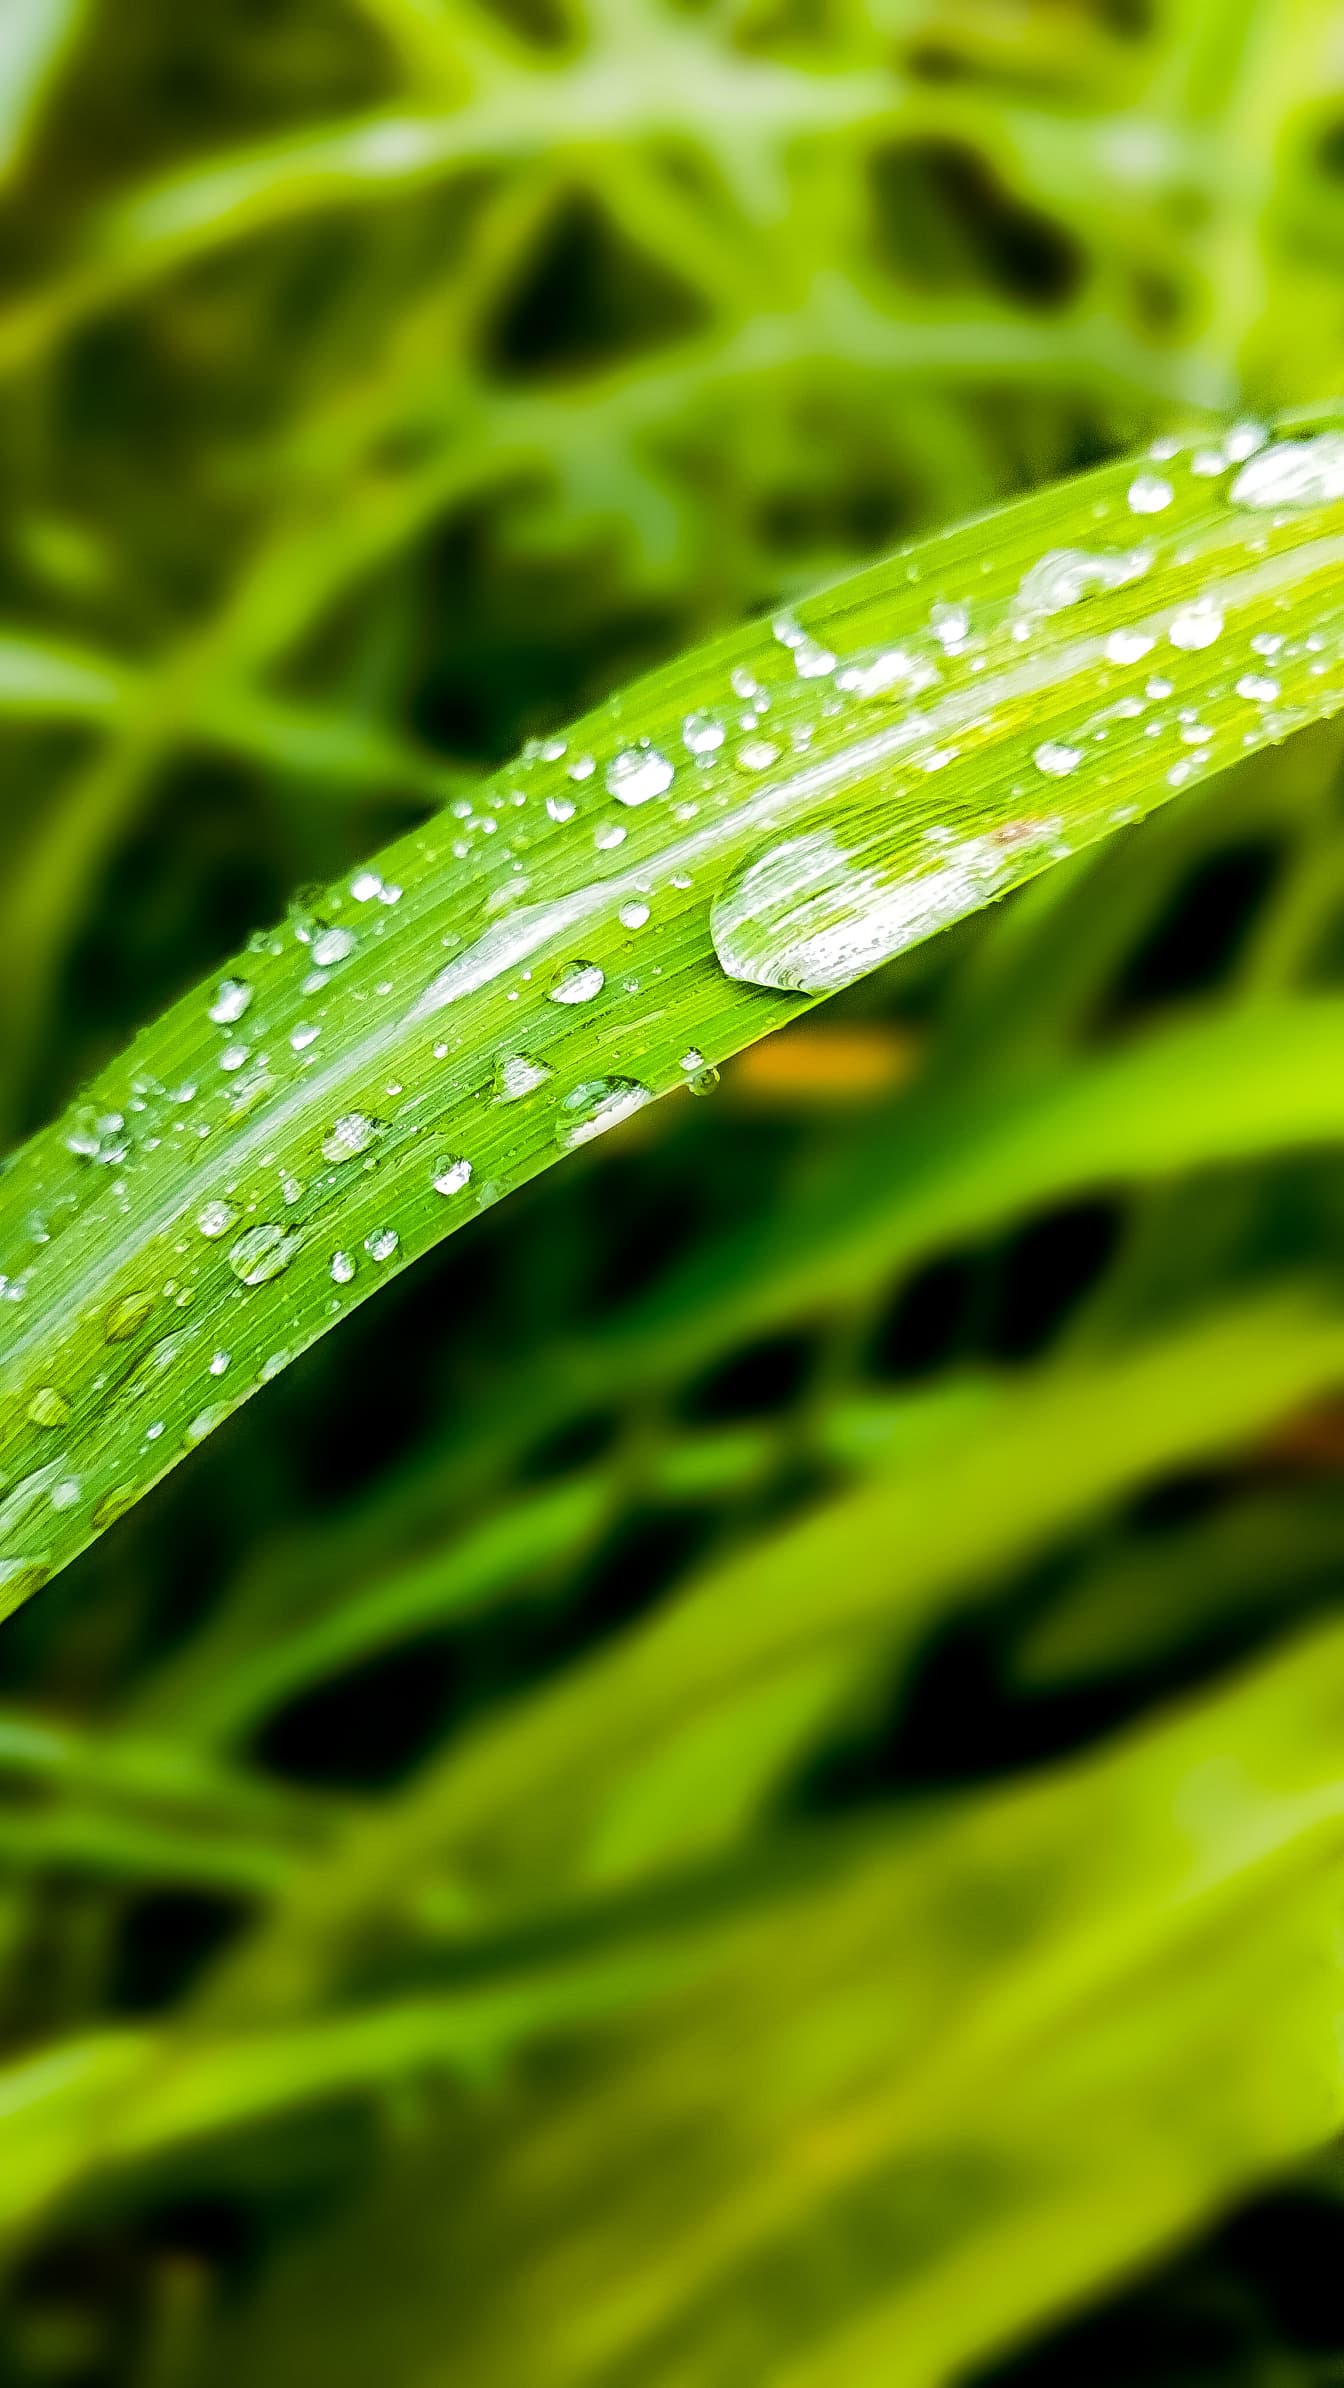 De waterdruppels van de dauw op groenachtig geel blad van gras